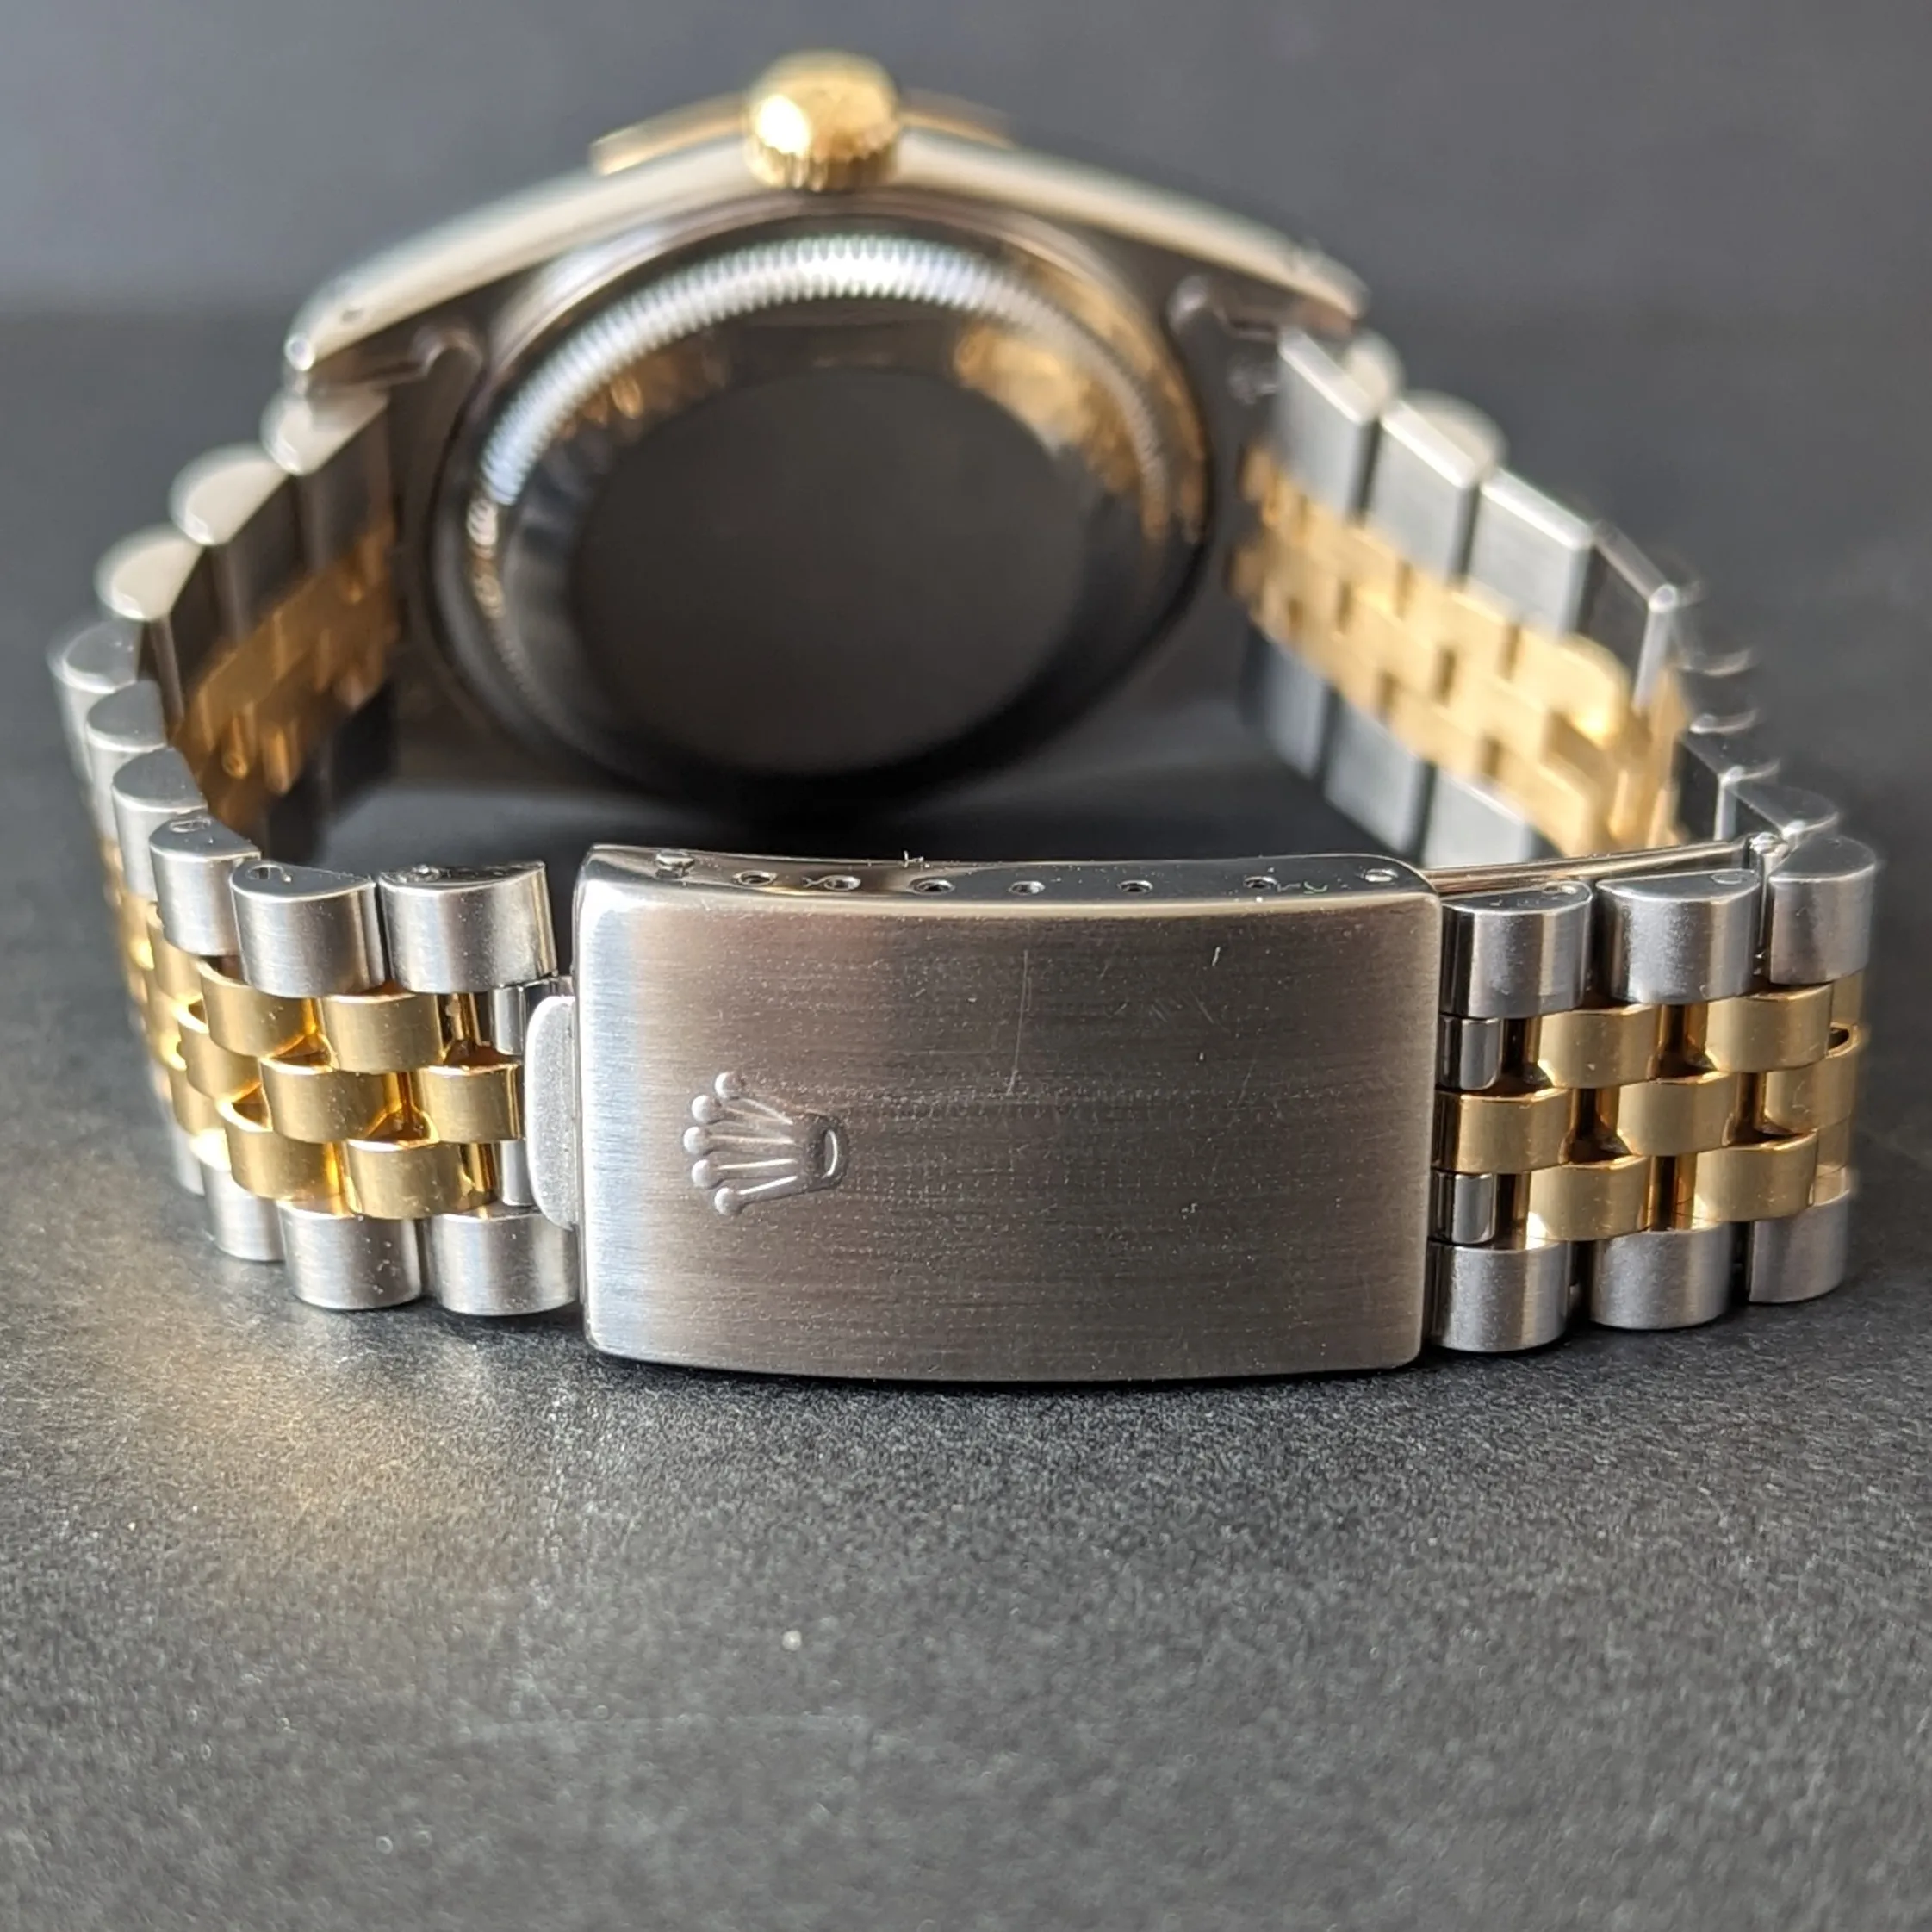 Exceptional value gents Rolex bracelet